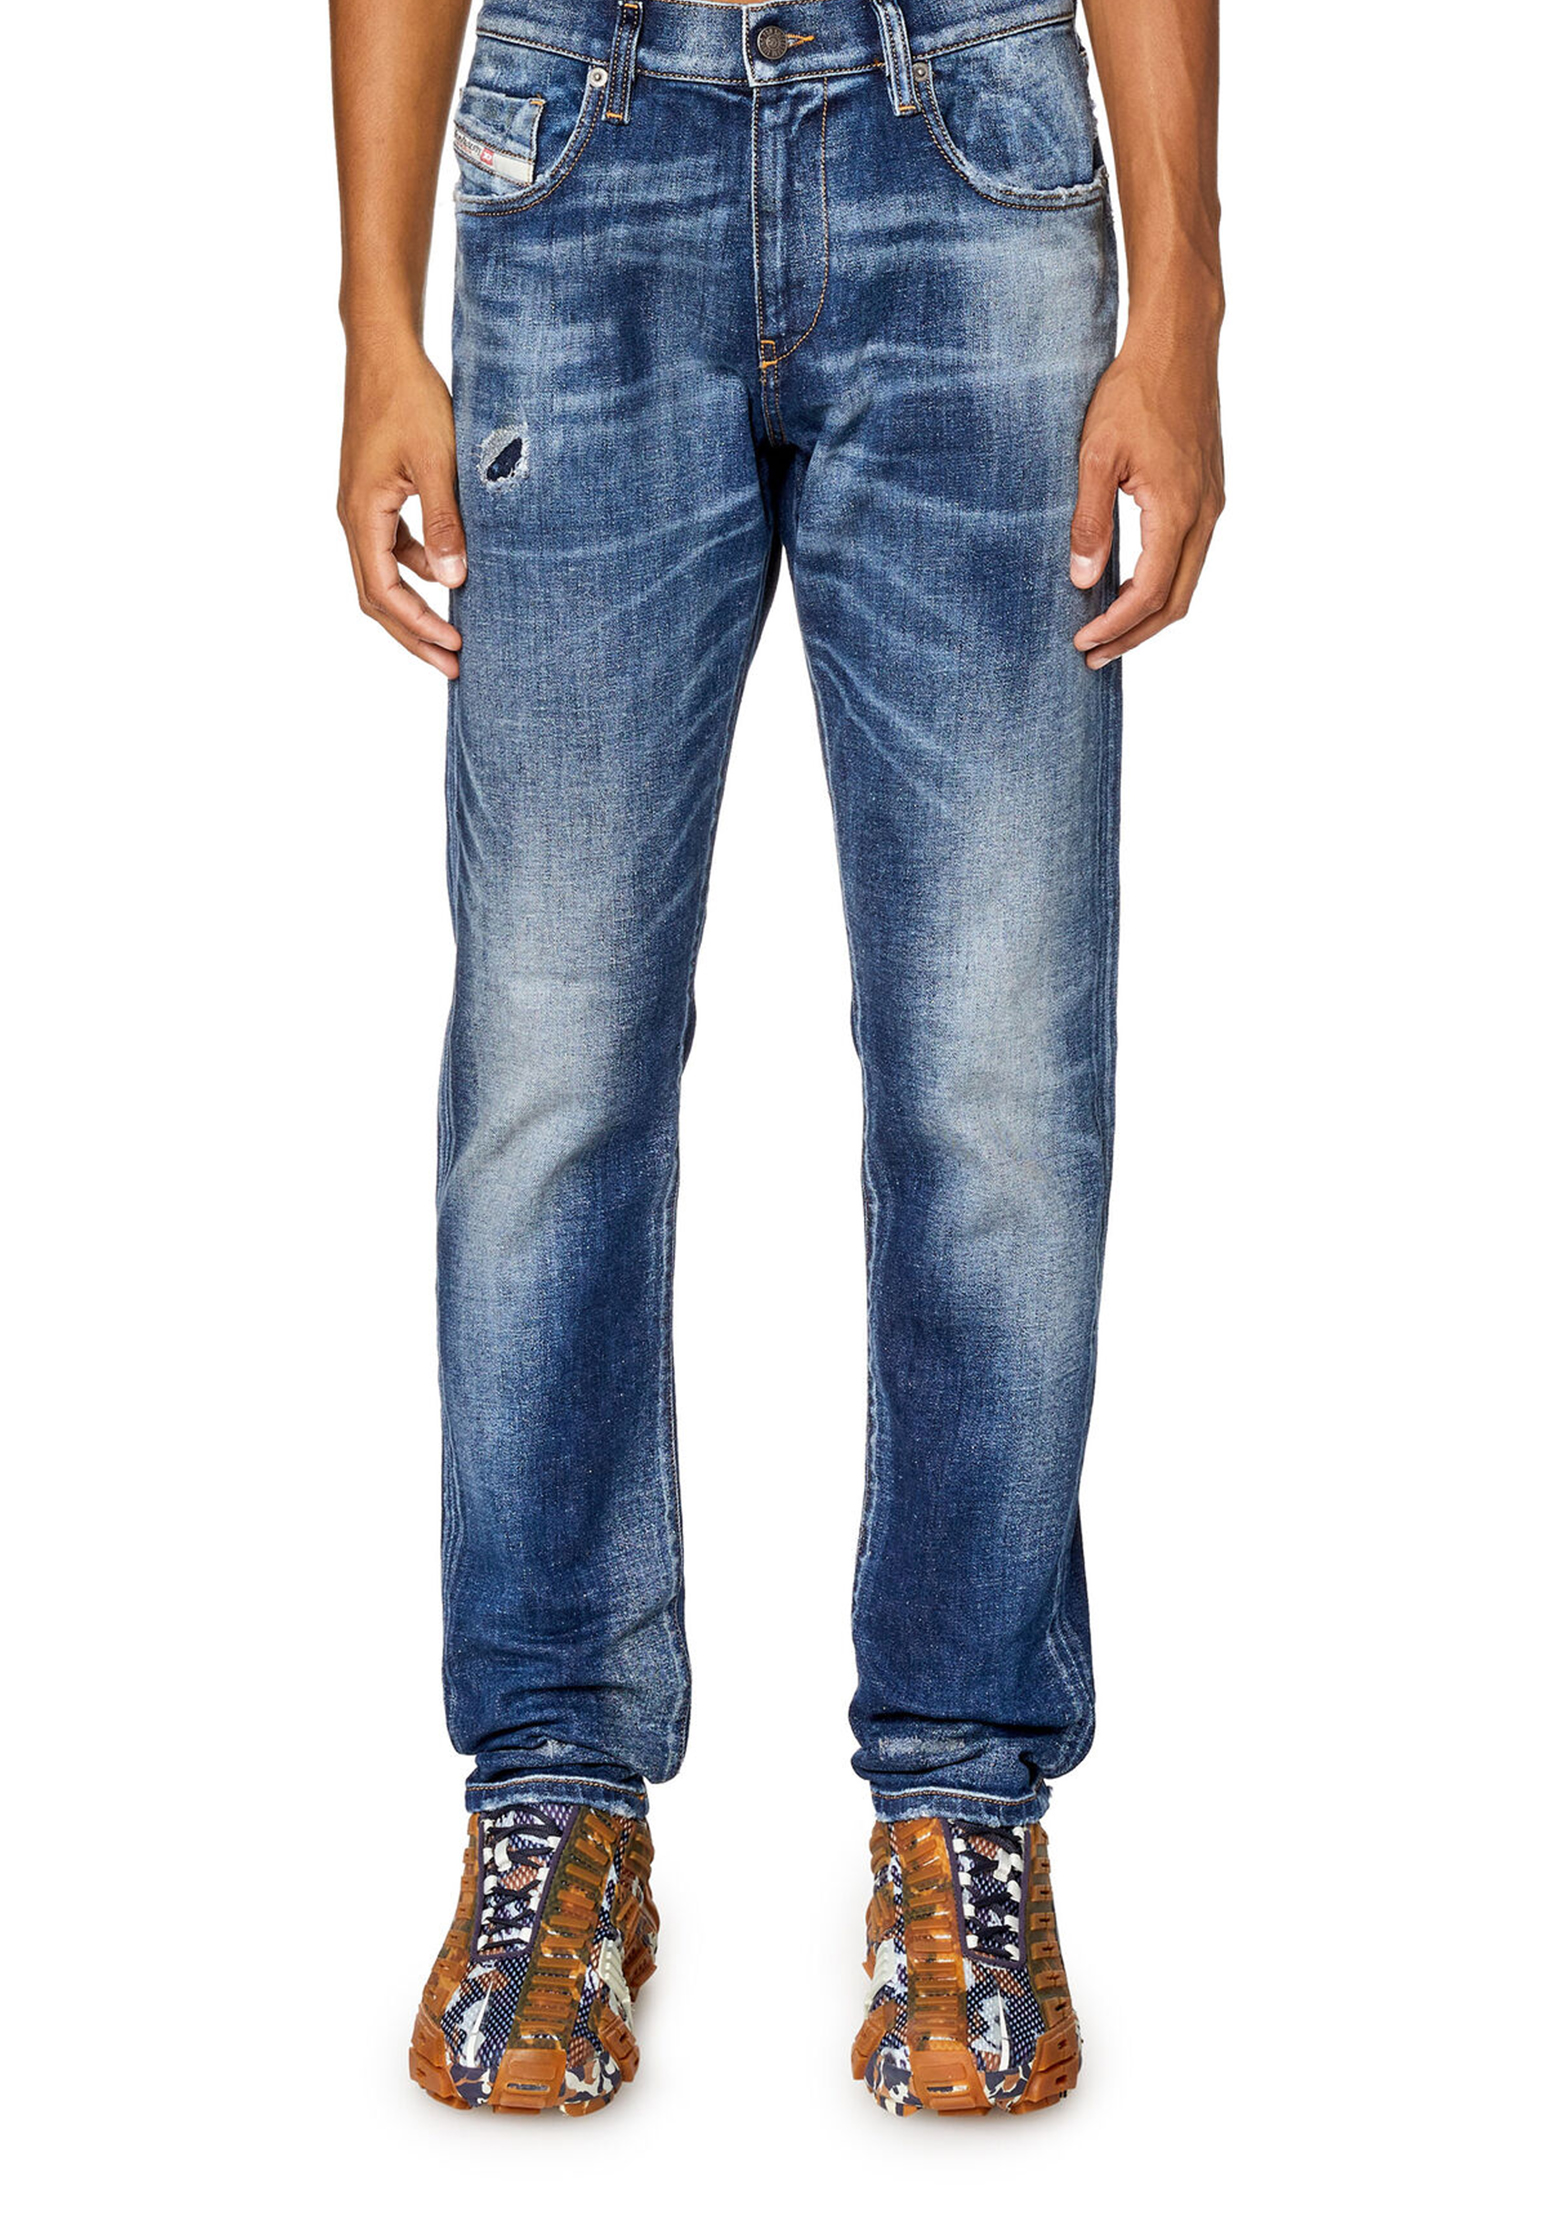 мужские прямые джинсы diesel, синие